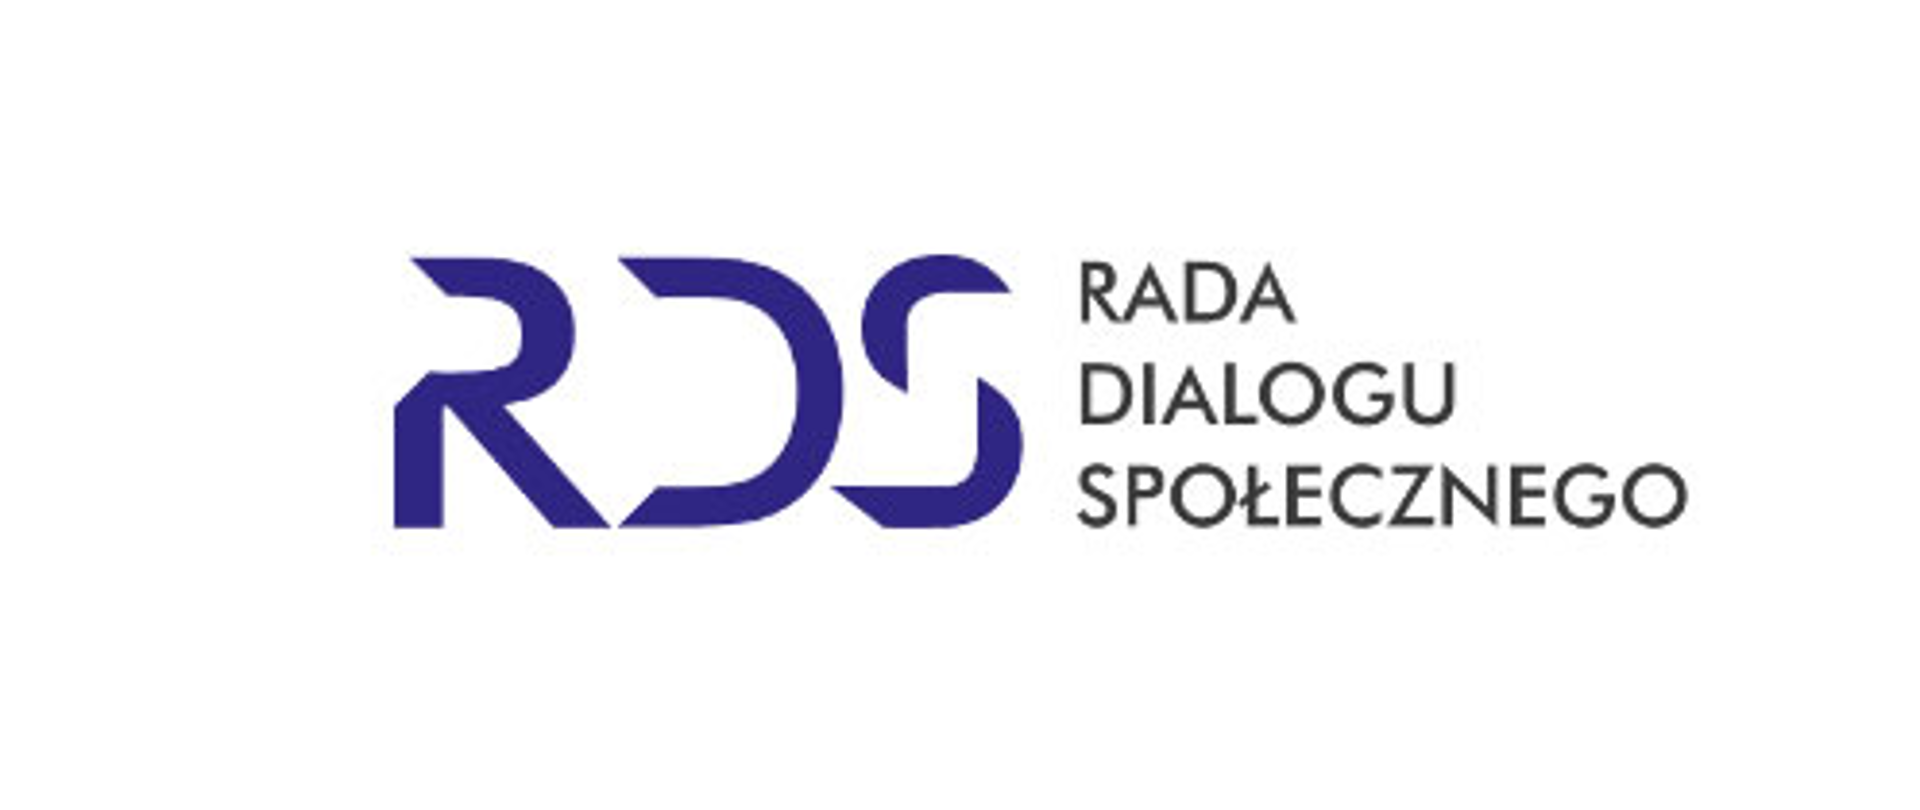 napis Rada Dialogu Społecznego i logotyp - skrót RDS